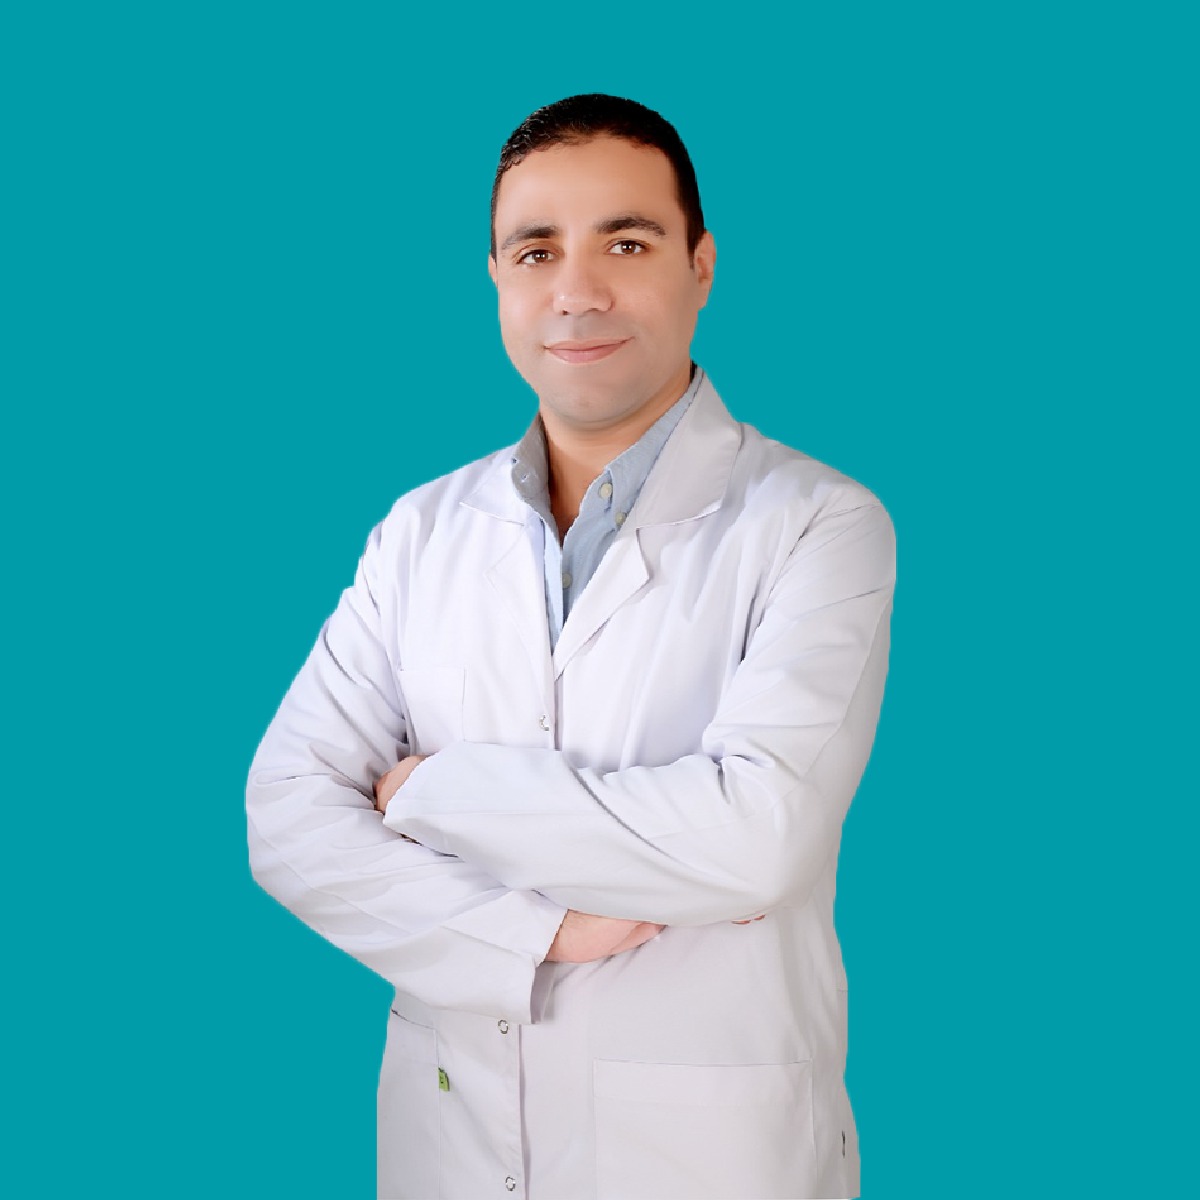 Dr. Hesham Abdelkrem